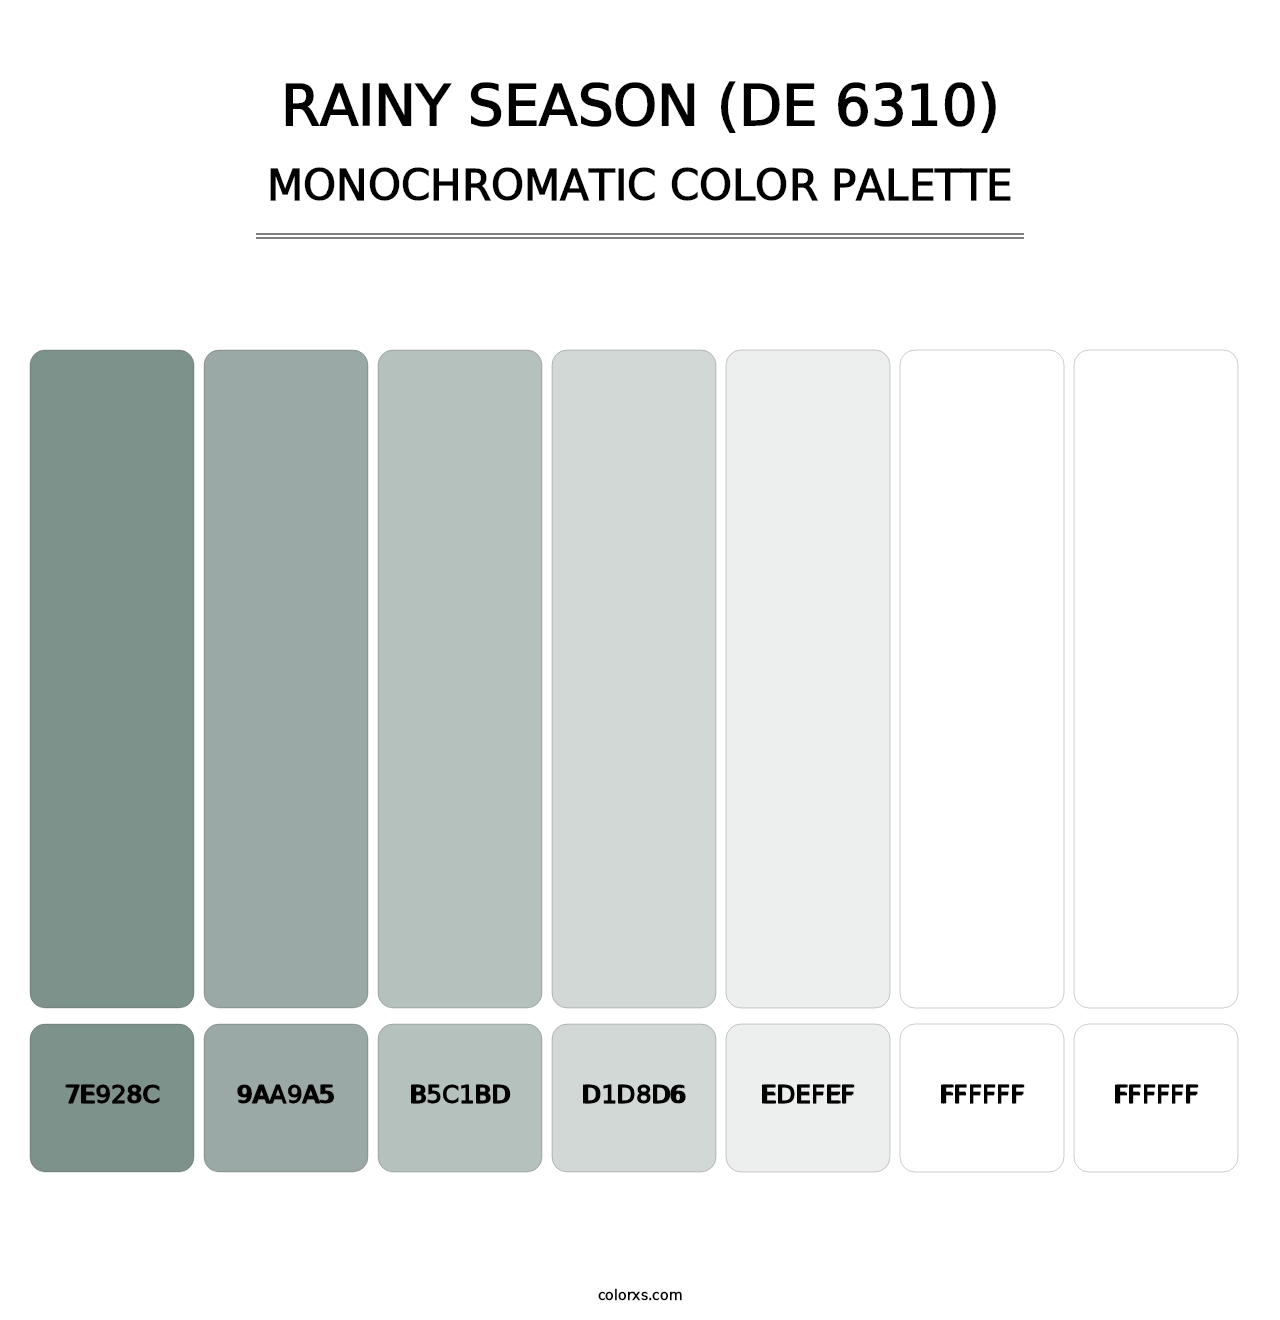 Rainy Season (DE 6310) - Monochromatic Color Palette